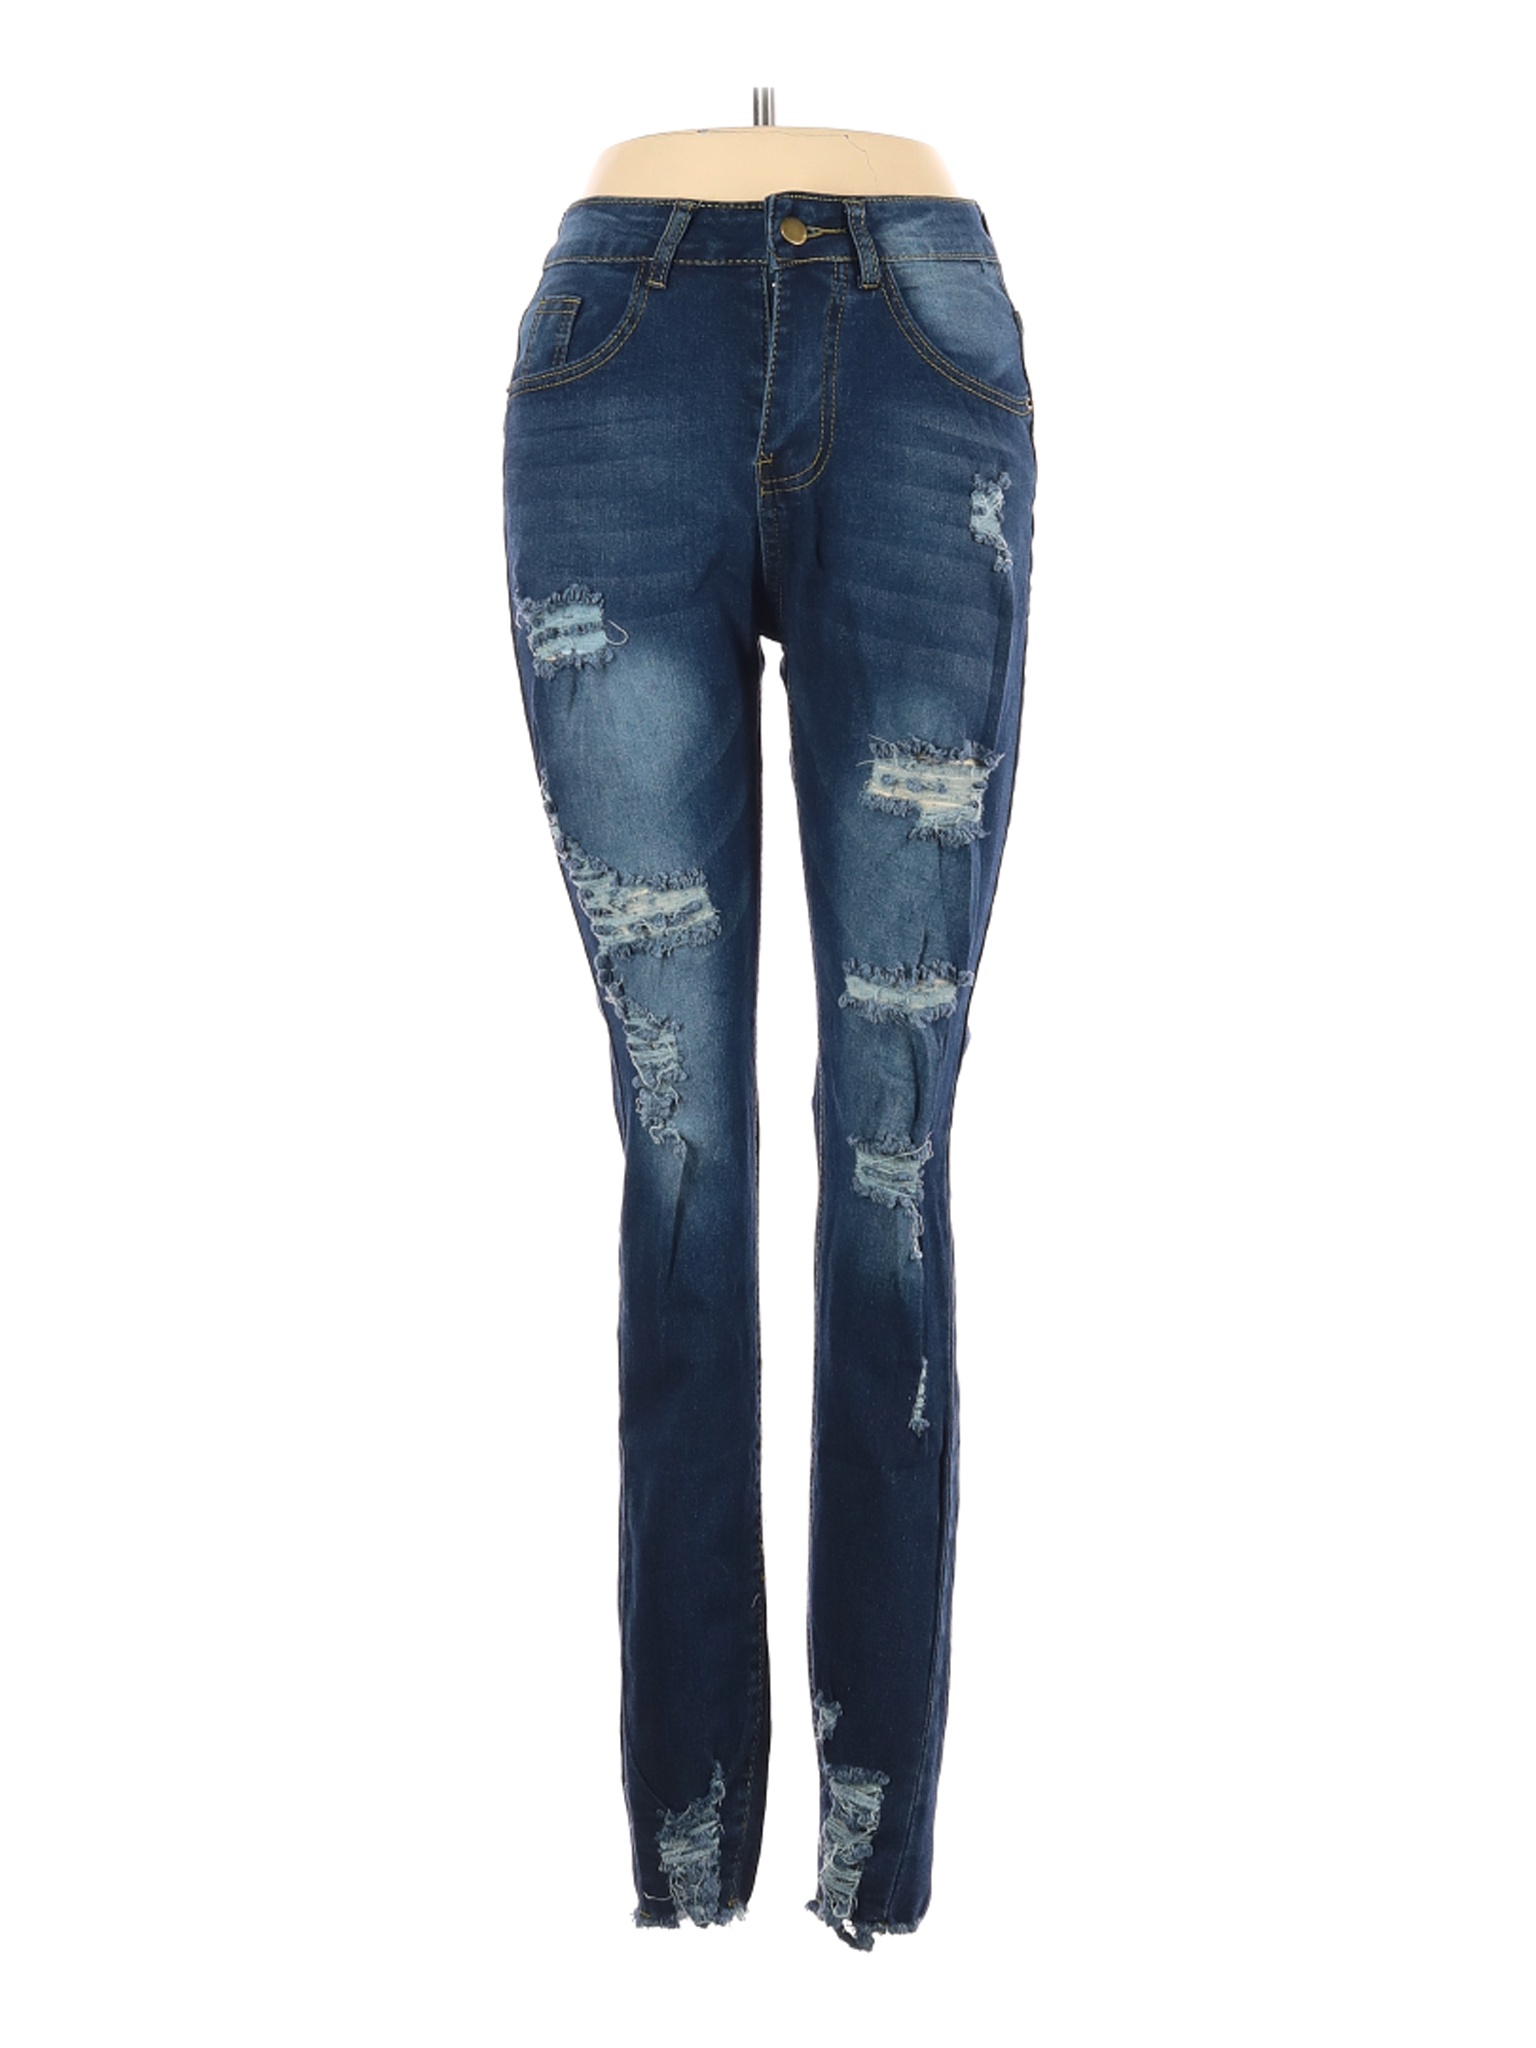 Shein Women Blue Jeans XS | eBay